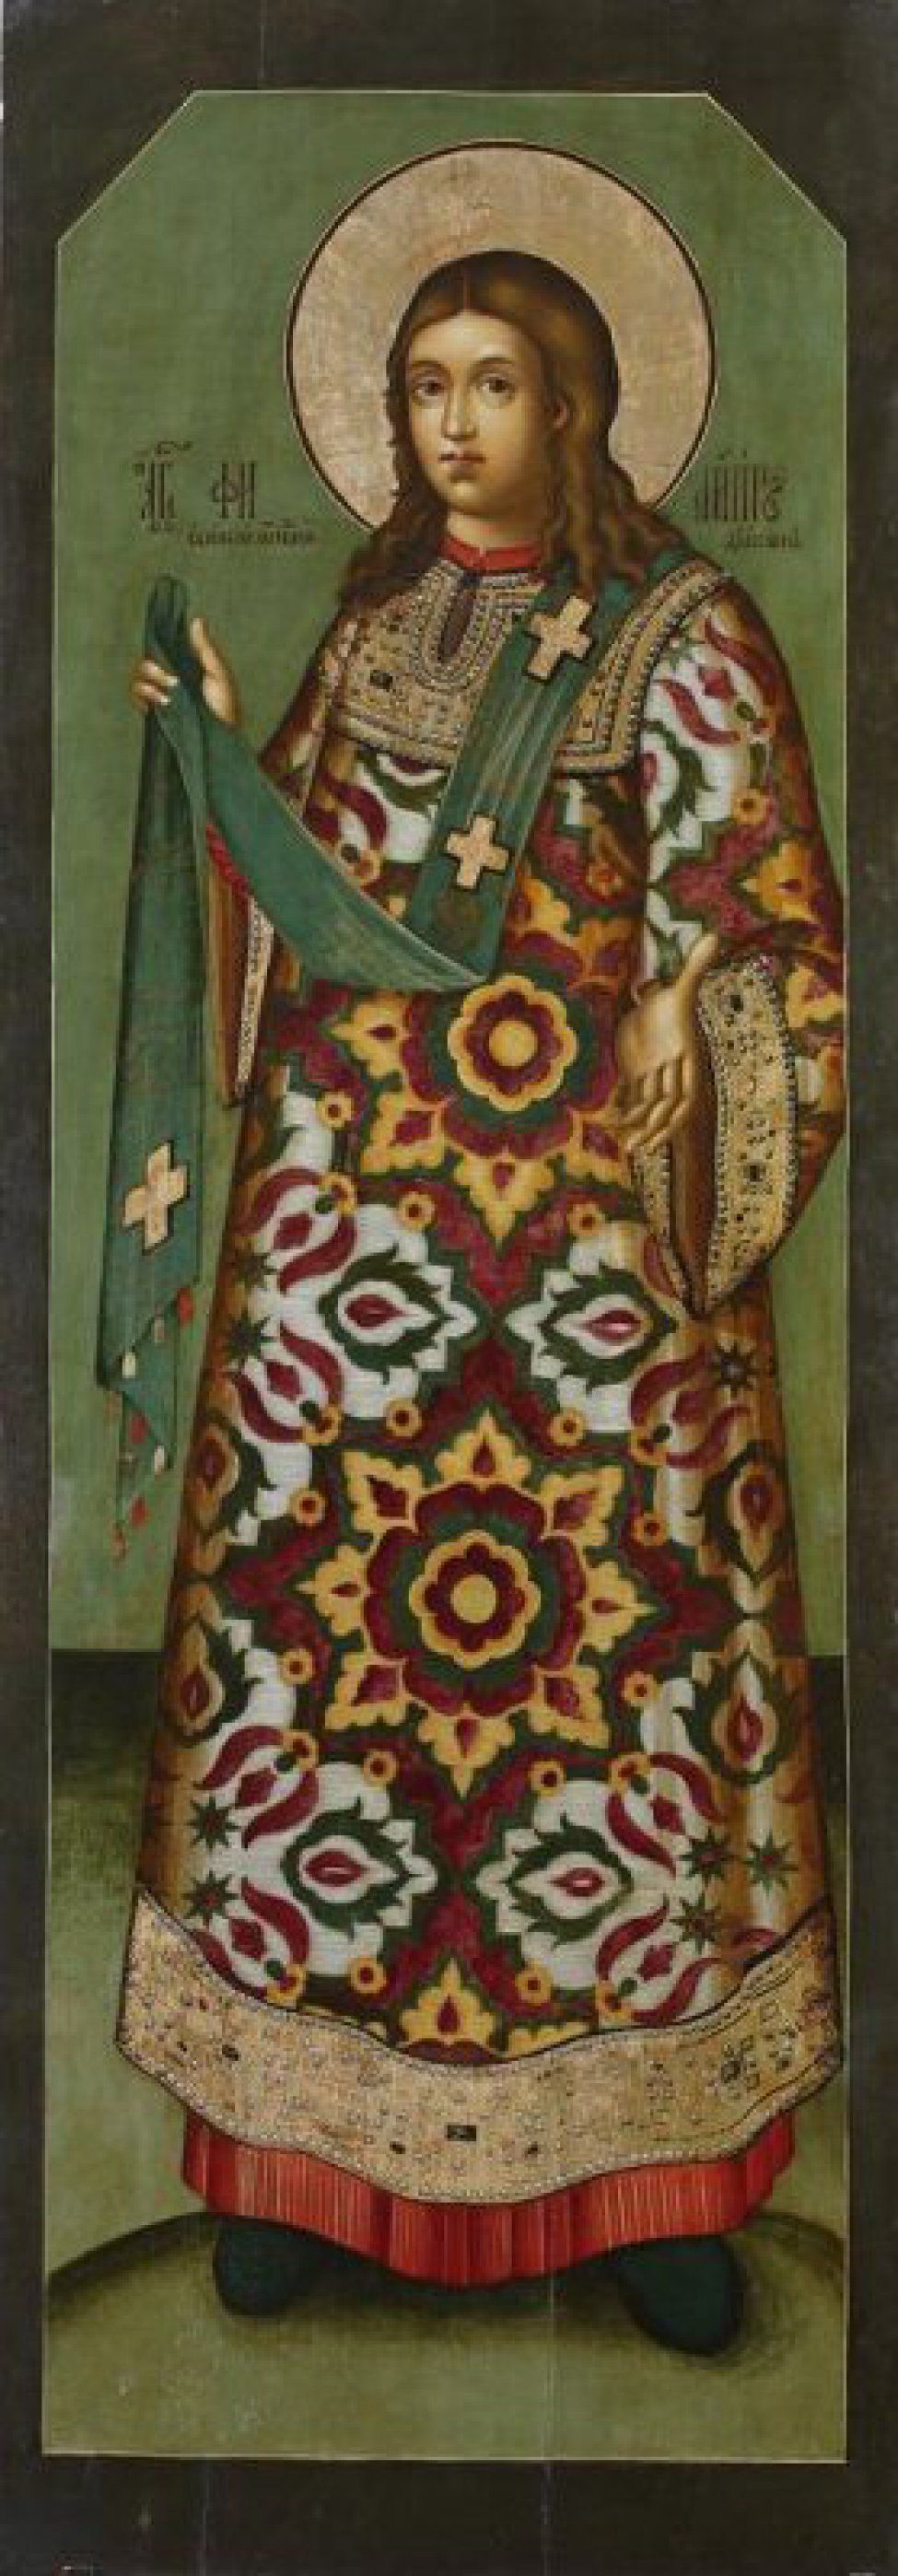 Доска: Доска без ковчега с 2 врезными односторонними шпонками.
Святой изображен в рост, с длинными, до плеч, волосами и в цветистой одежде с крупным орнаментом. Фон зеленый, край темный.